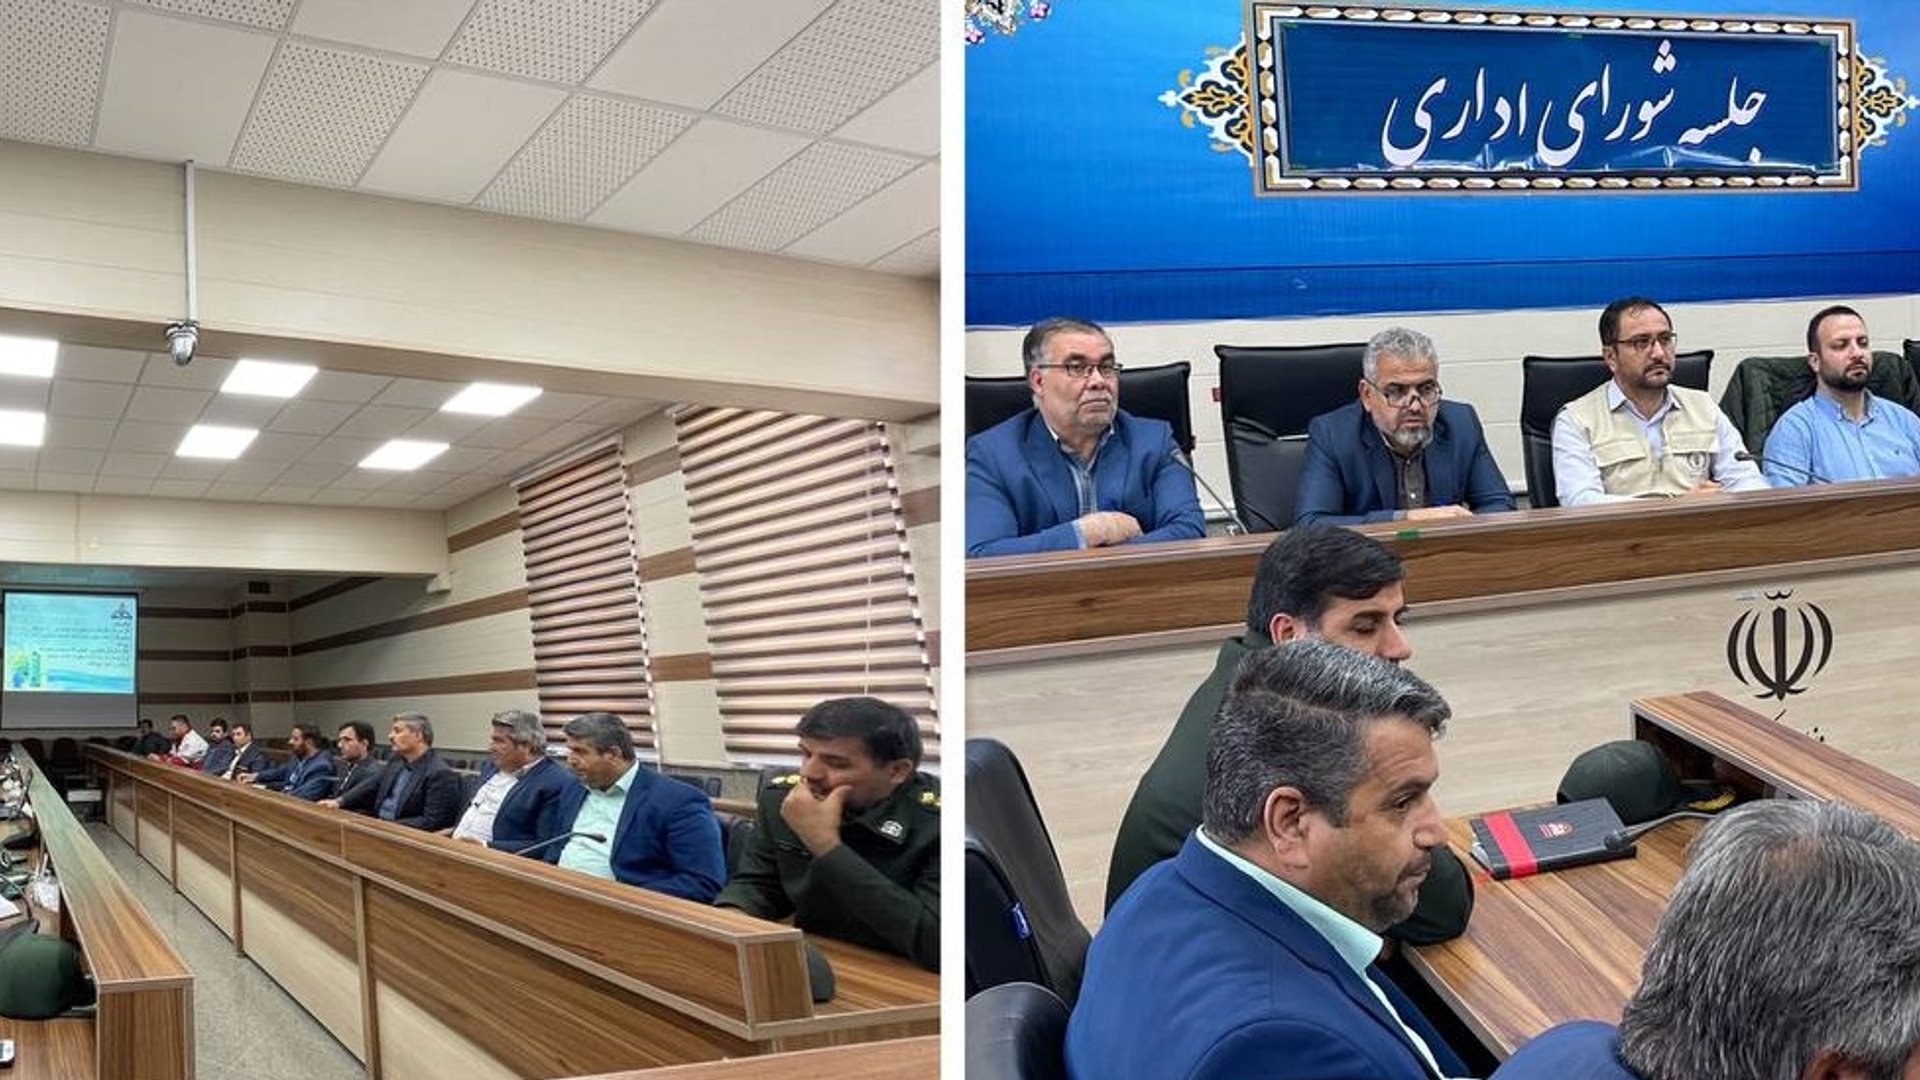 جلسه شورای اداری شهرستان کمیجان برگزار گردید...